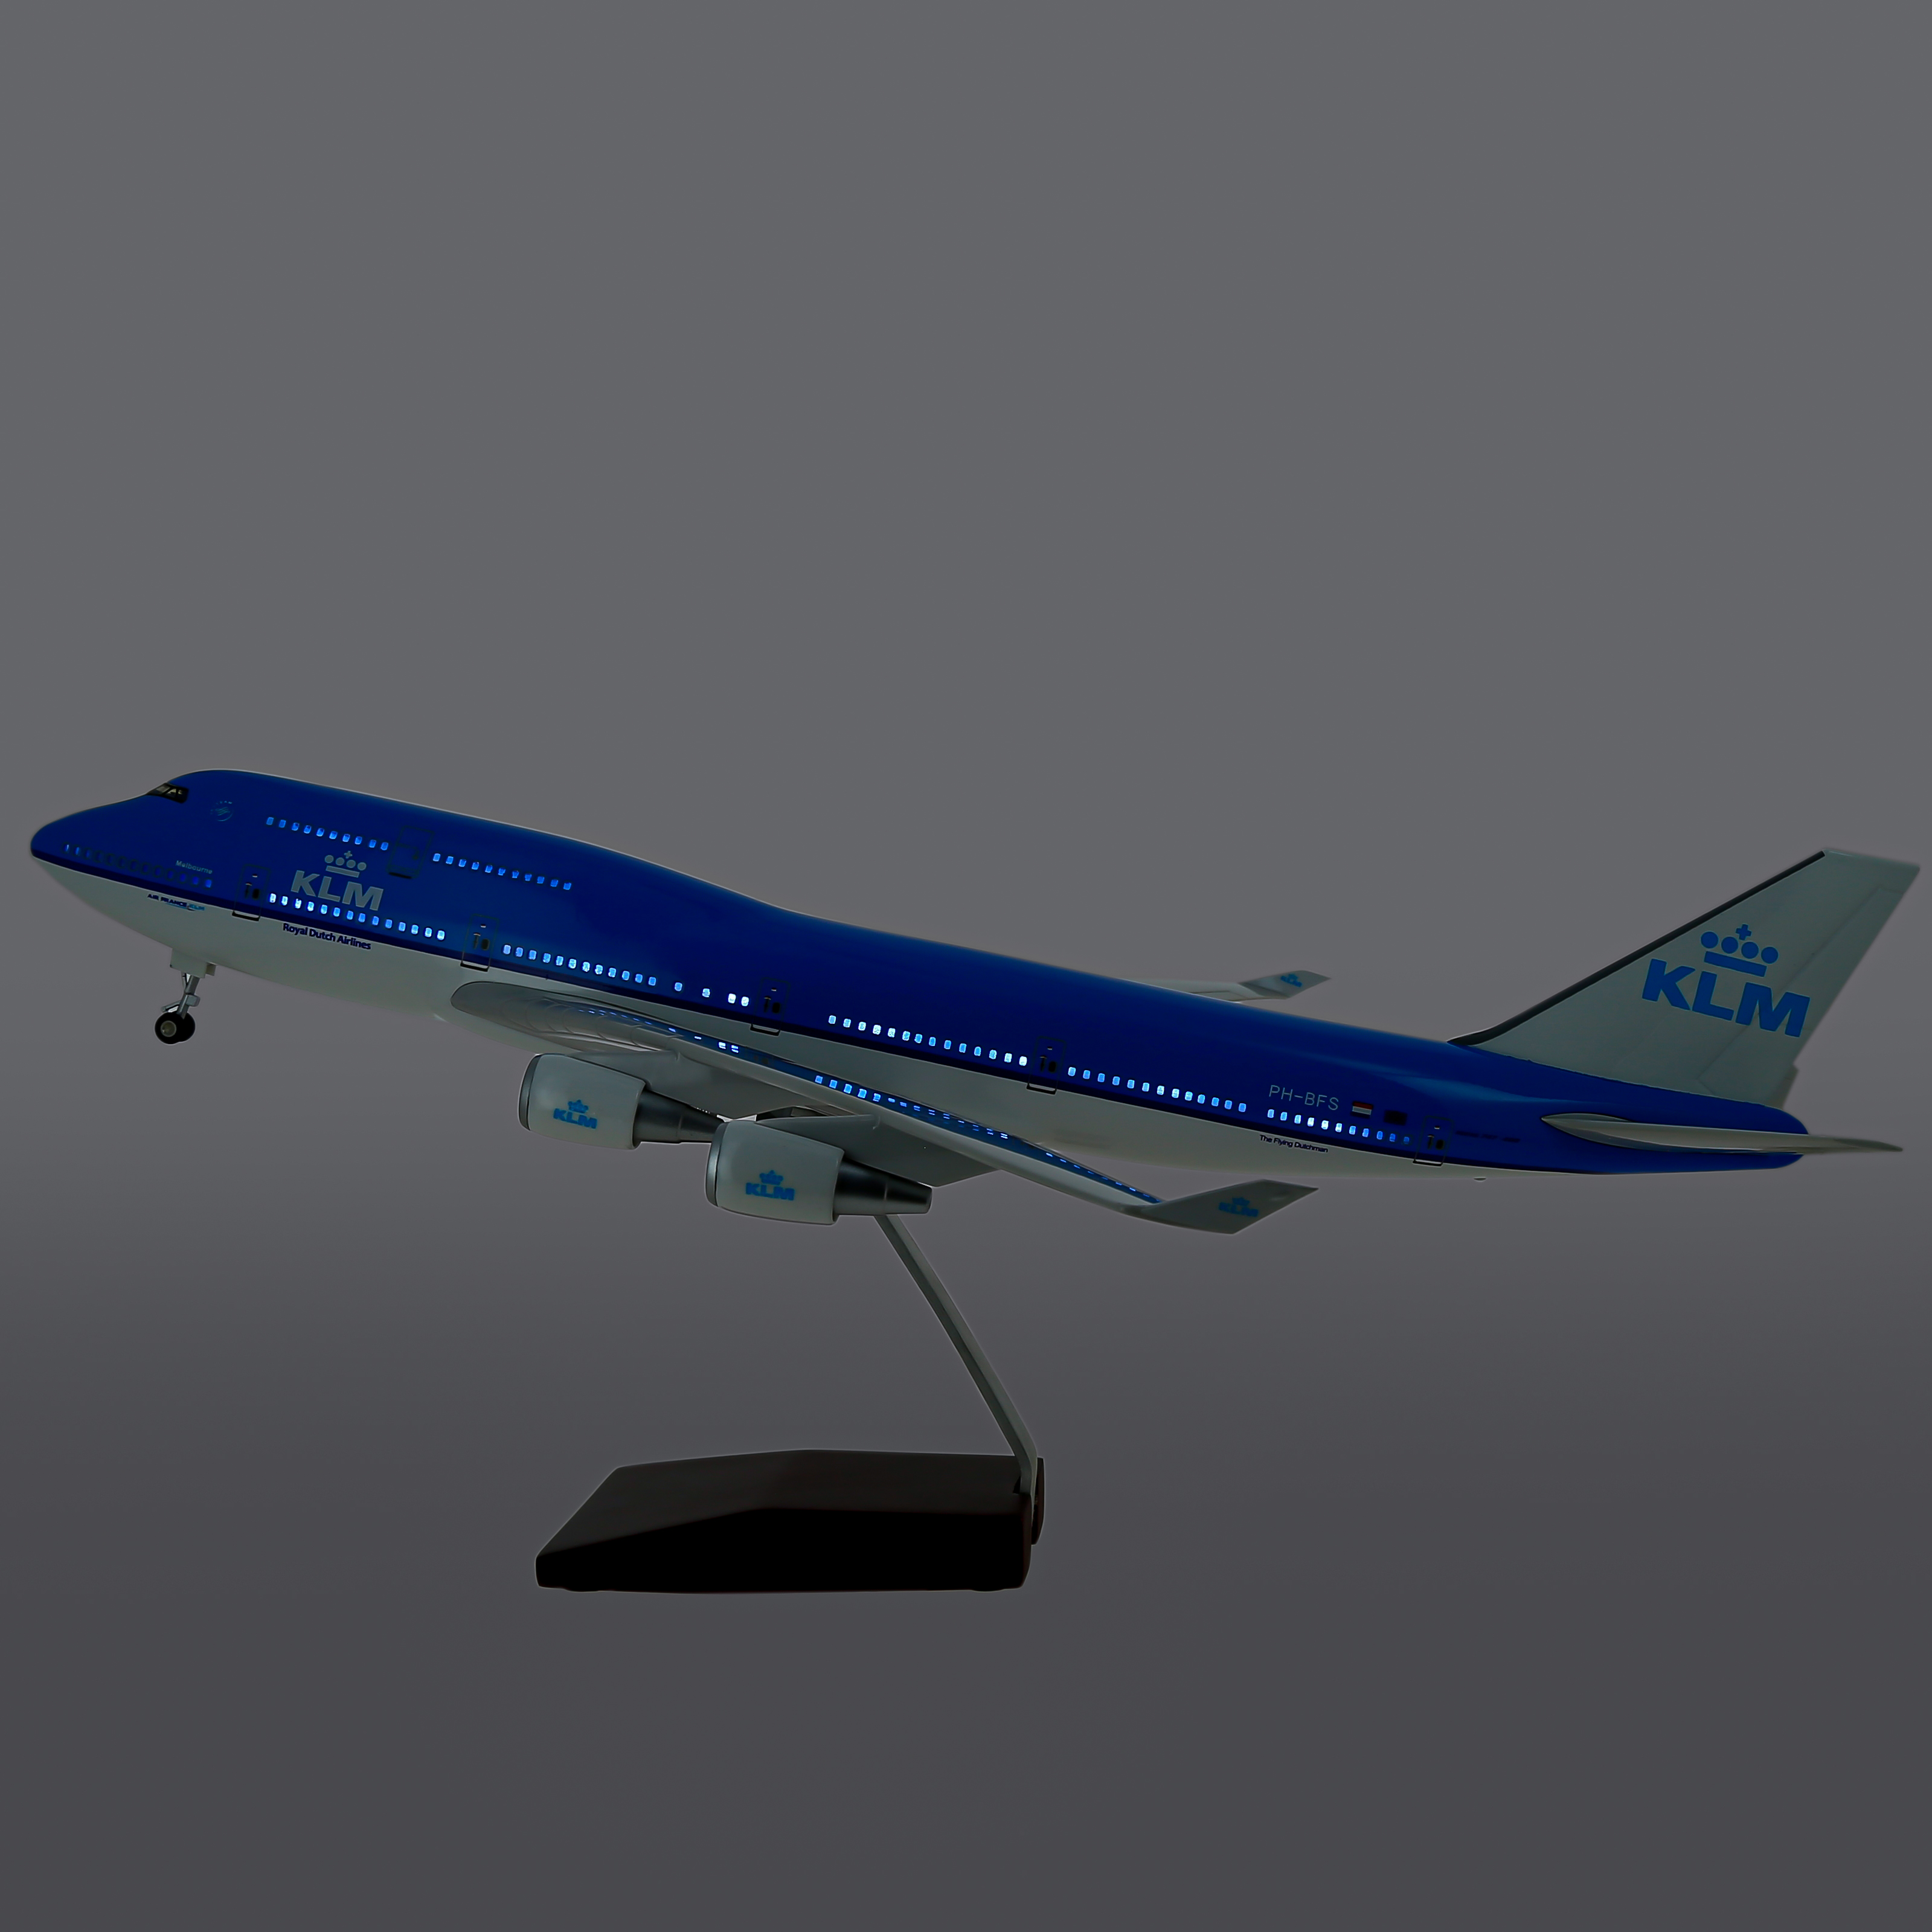     747  KLM,   .  47 . # 1 hobbyplus.ru